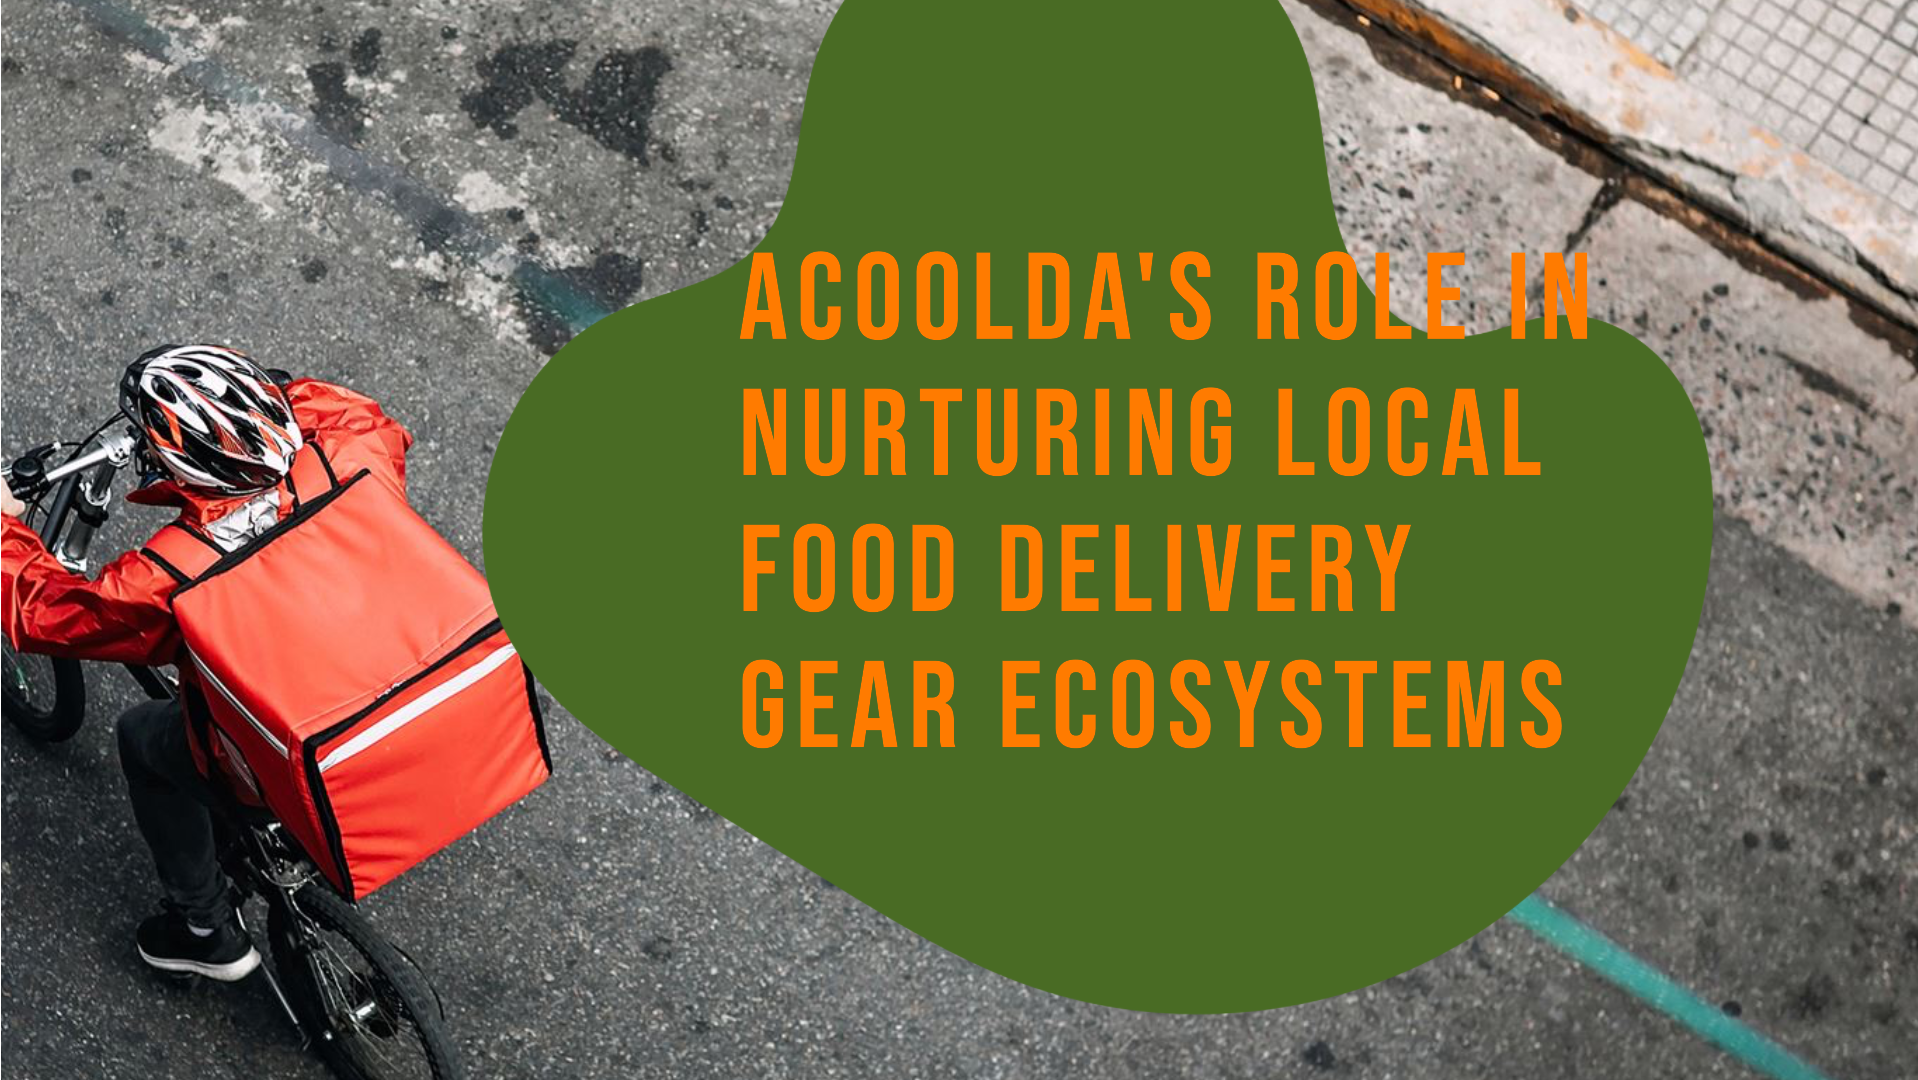 Il ruolo di ACOOLDA nel coltivare gli ecosistemi locali di attrezzature per la consegna del cibo